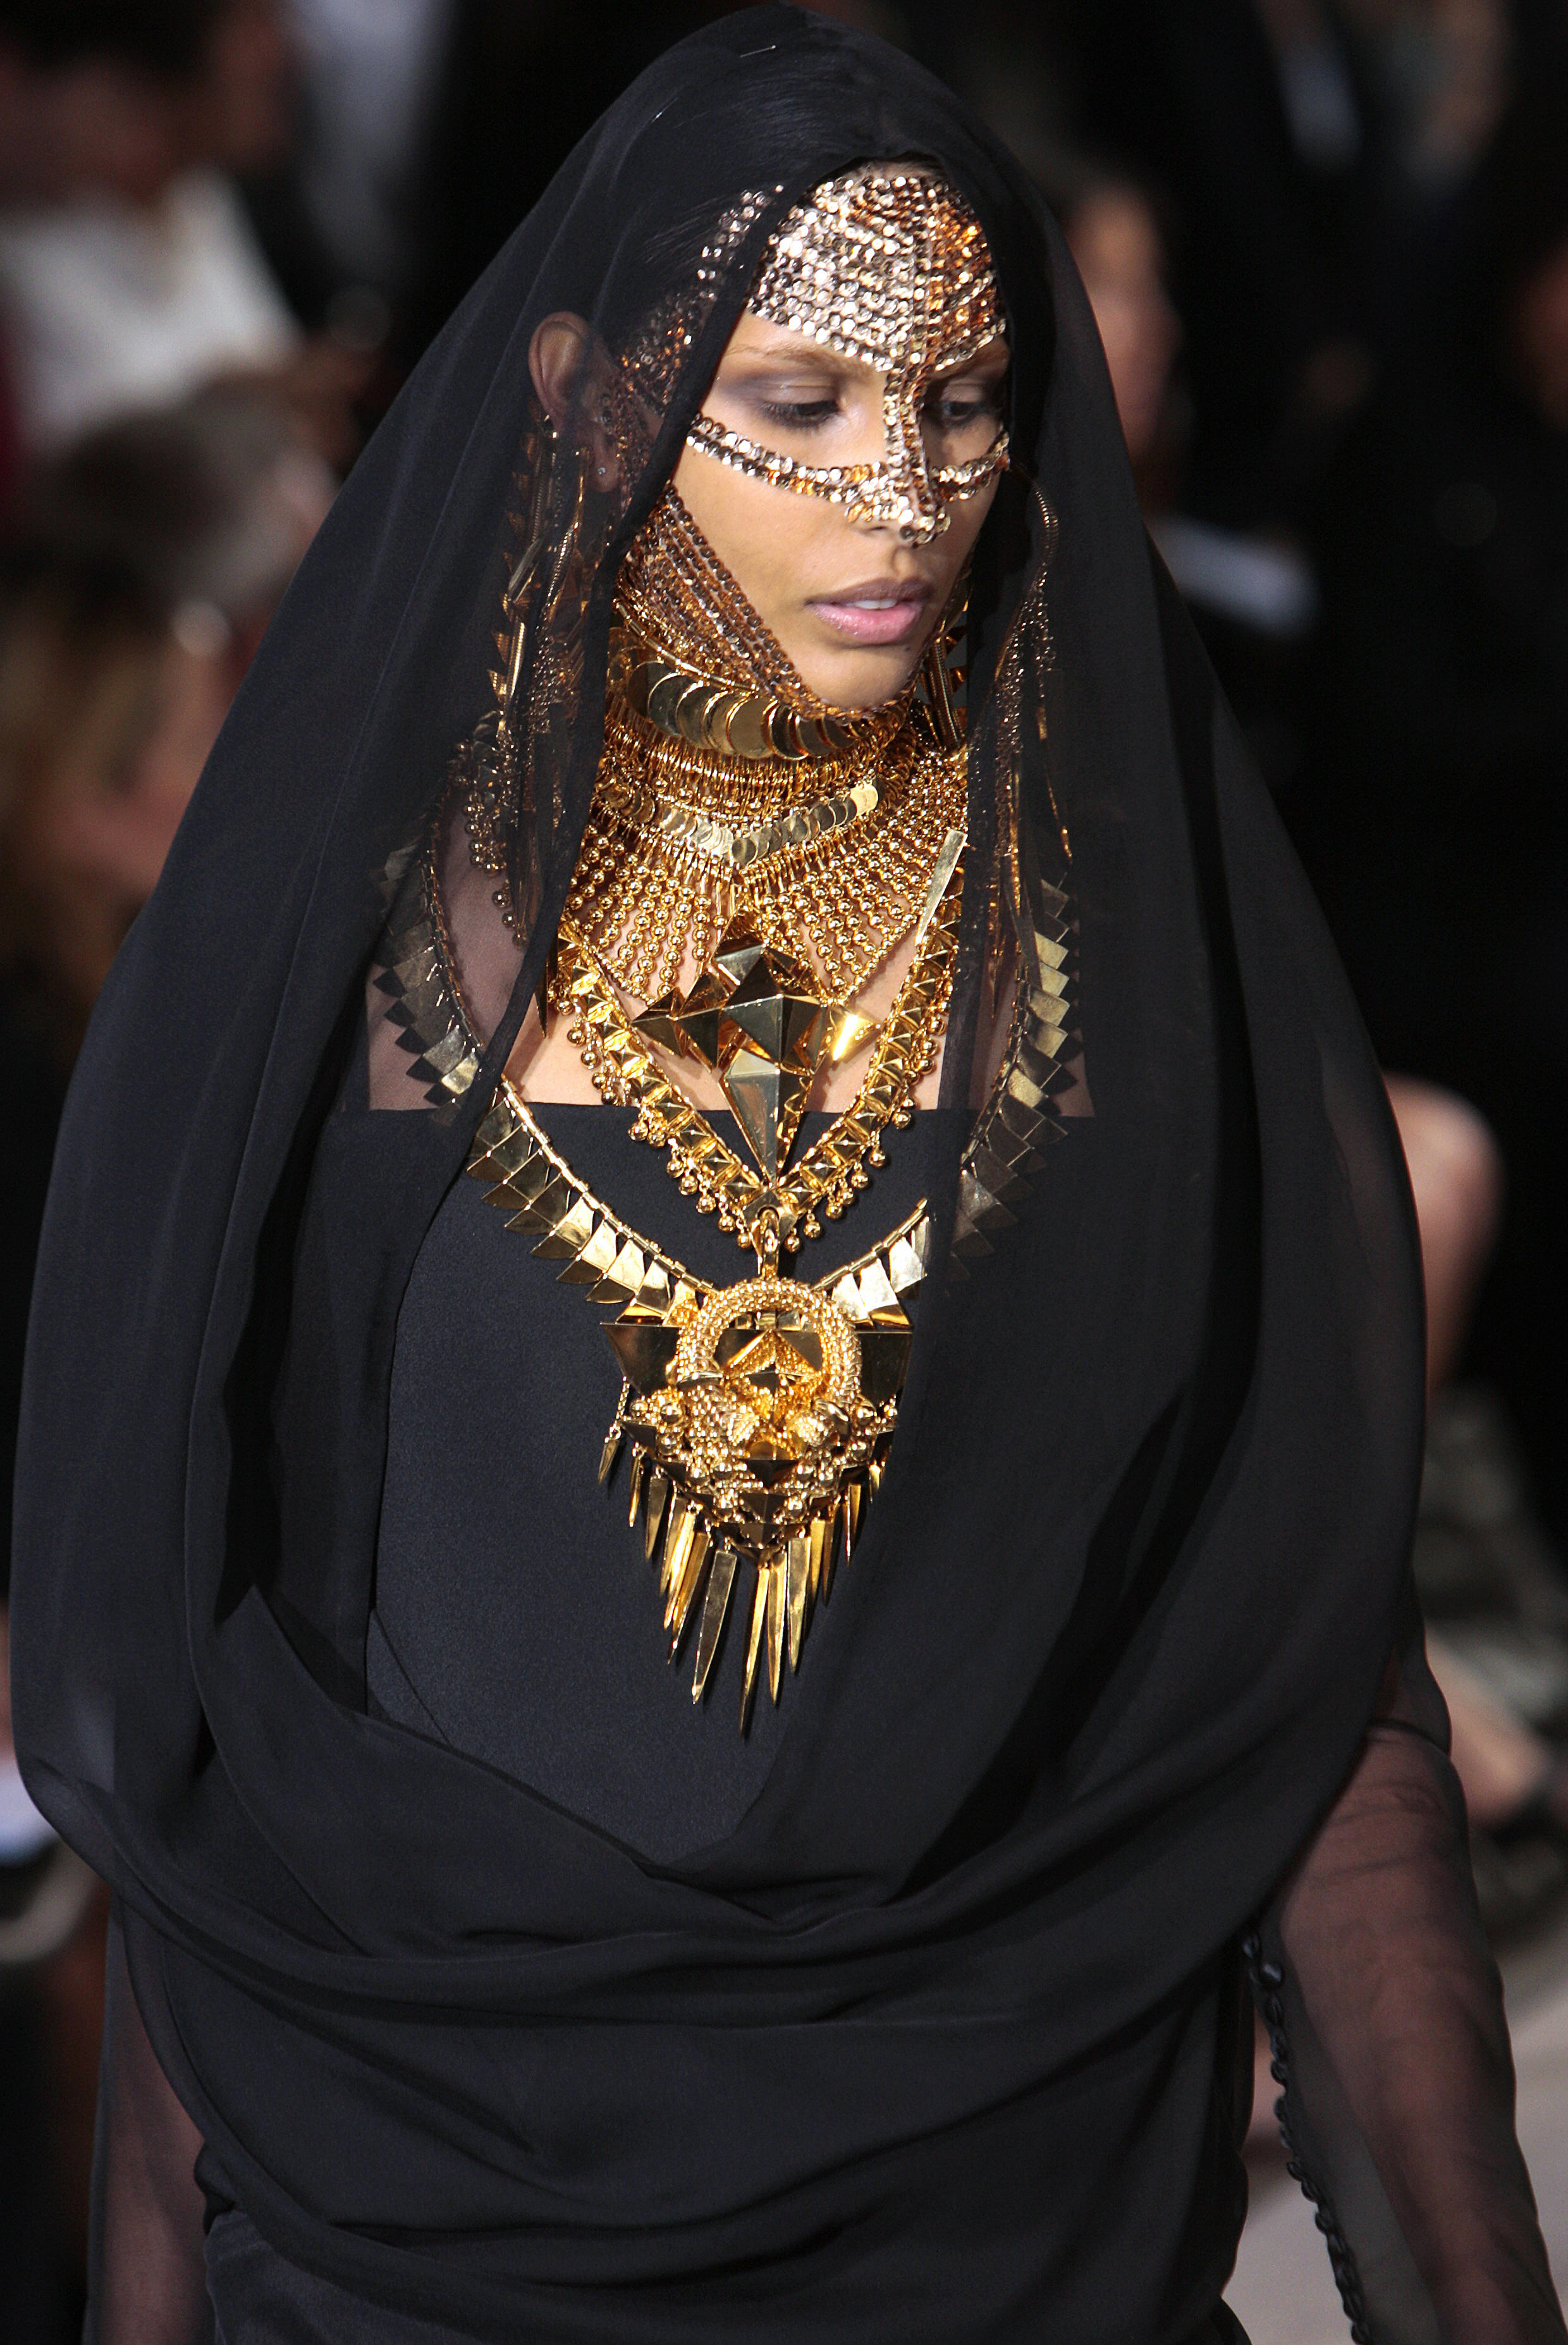 Pretty Niqab